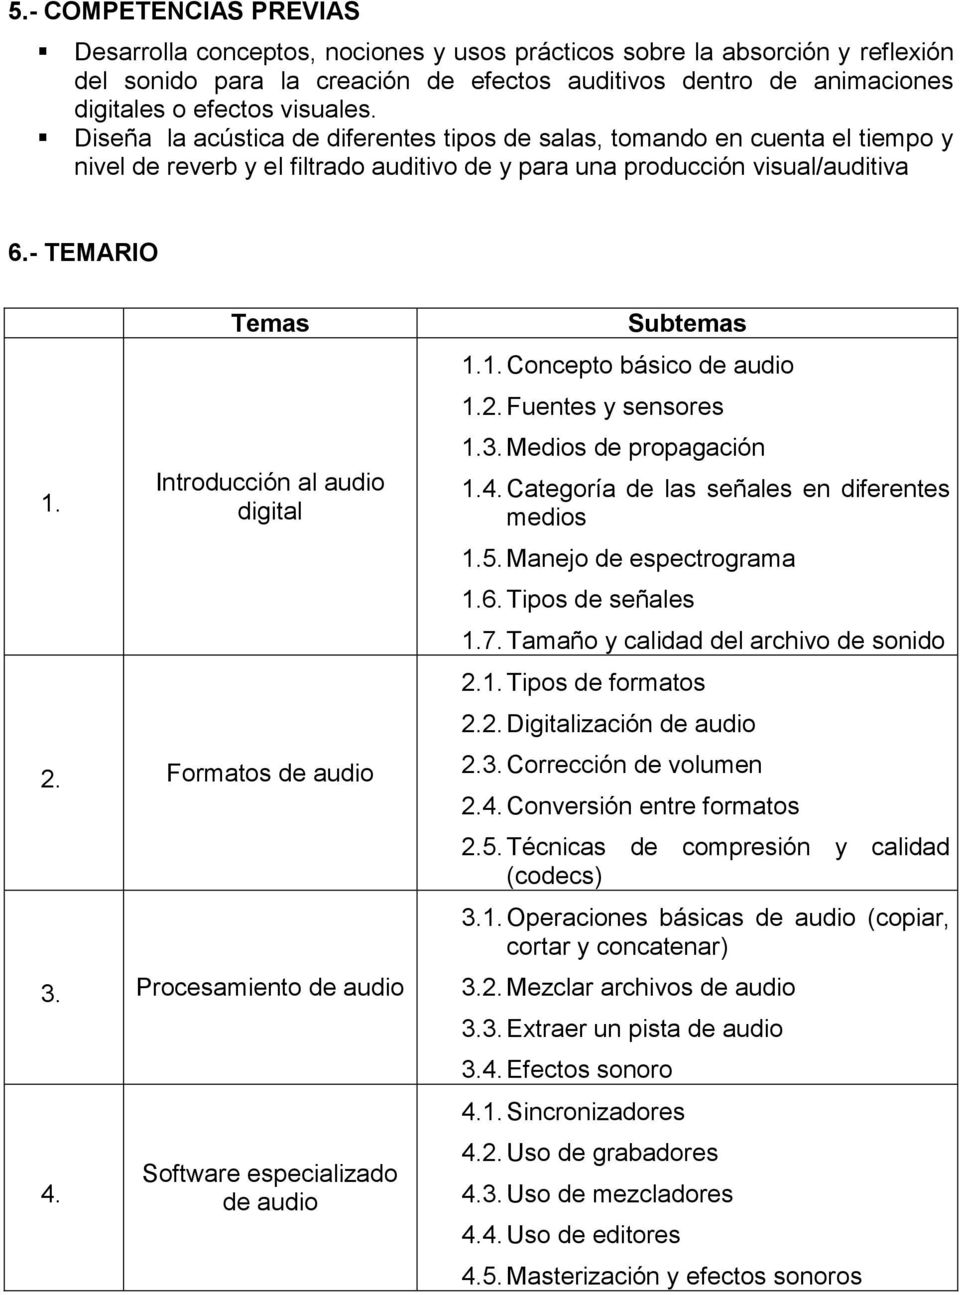 Temas Introducción al audio digital 2. Formatos de audio 3. Procesamiento de audio 4. Software especializado de audio Subtemas 1.1. Concepto básico de audio 1.2. Fuentes y sensores 1.3. Medios de propagación 1.